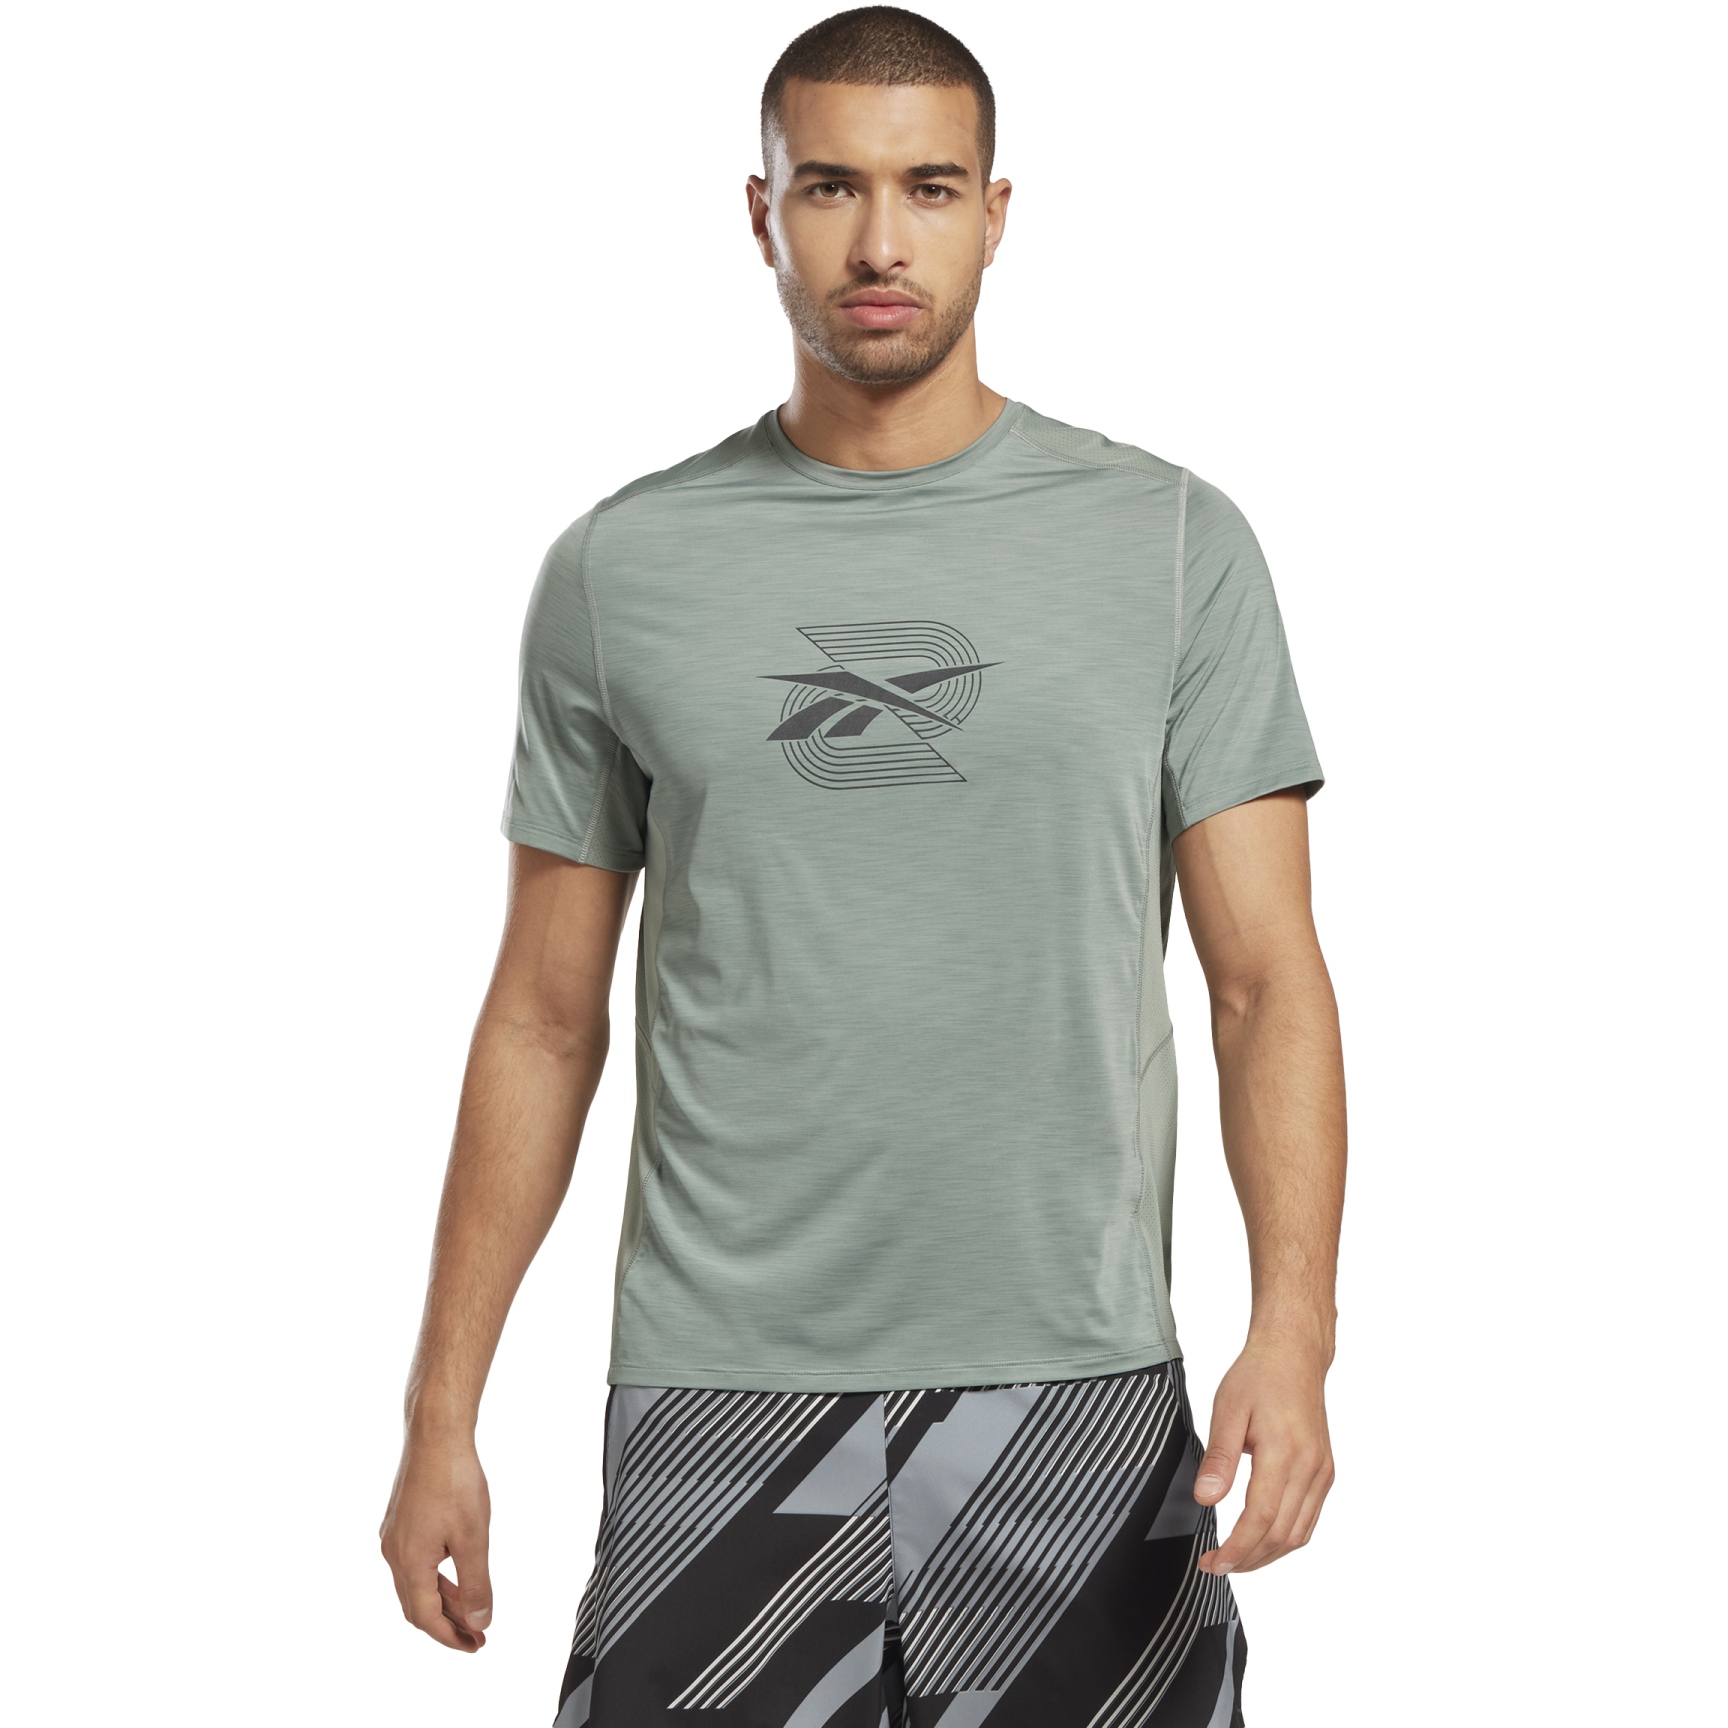 Produktbild von Reebok TS AC Graphic T-Shirt Herren - harmony green